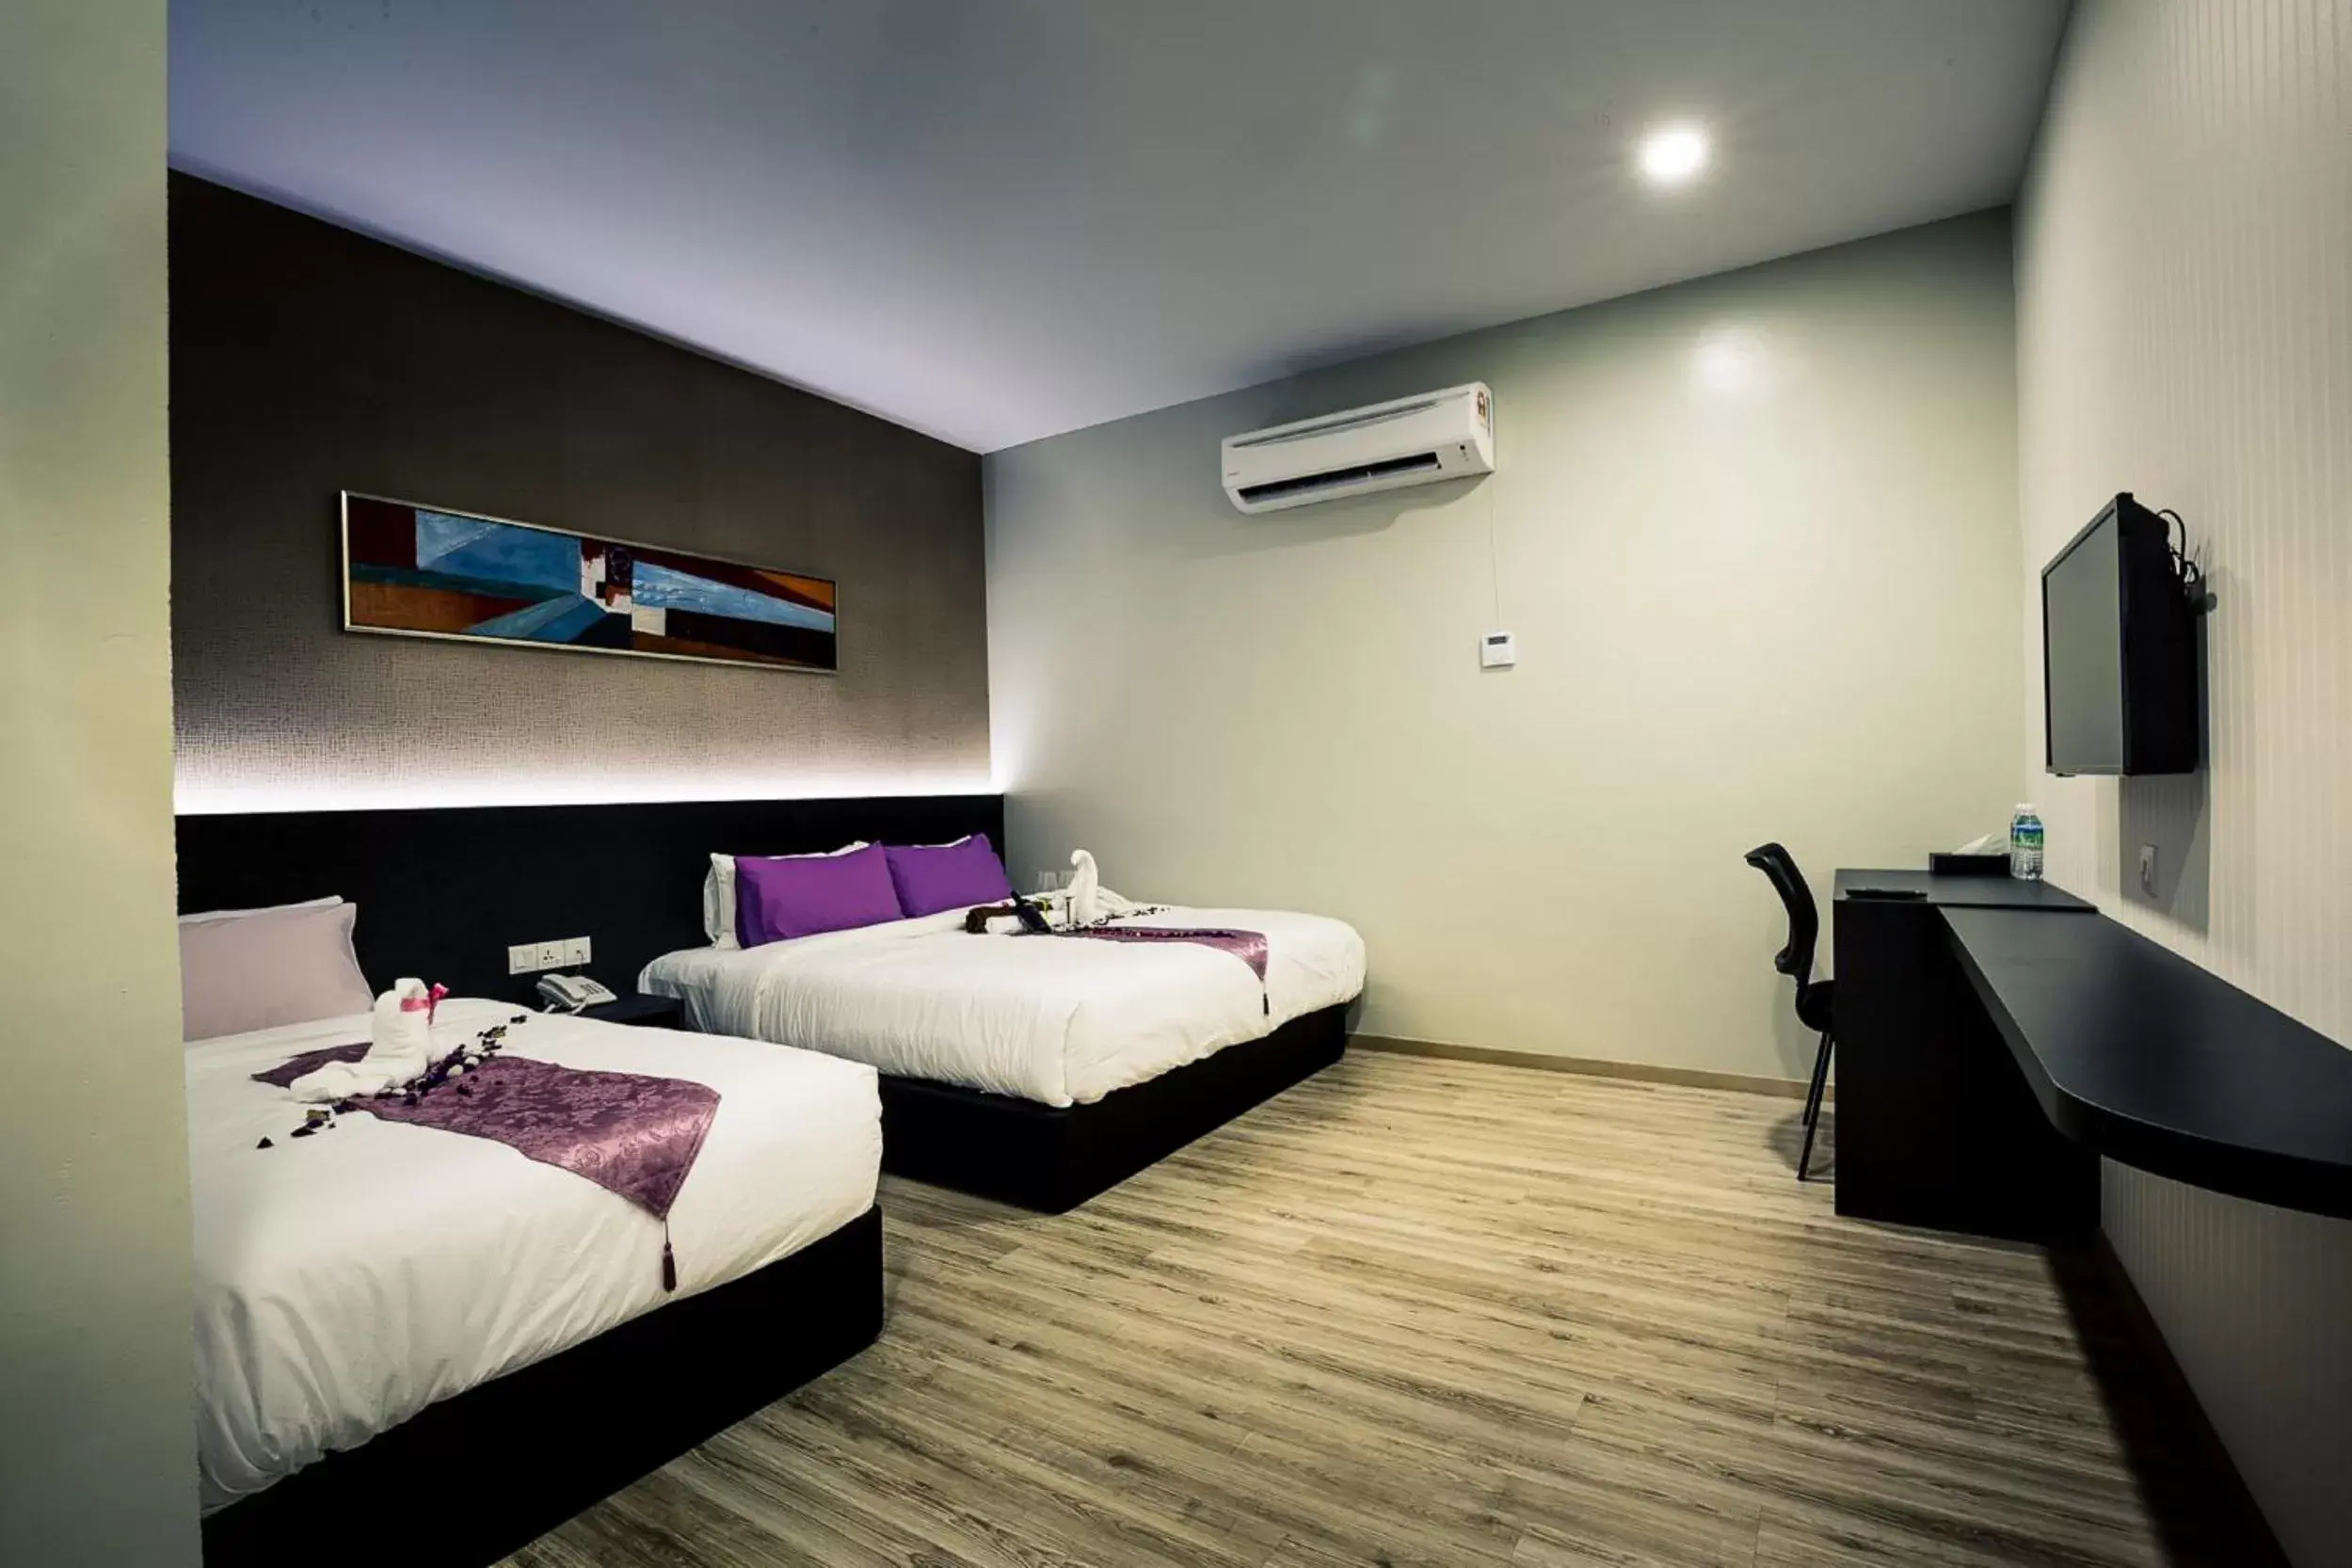 Bedroom, Room Photo in Golden Roof Hotel Sunway Ipoh